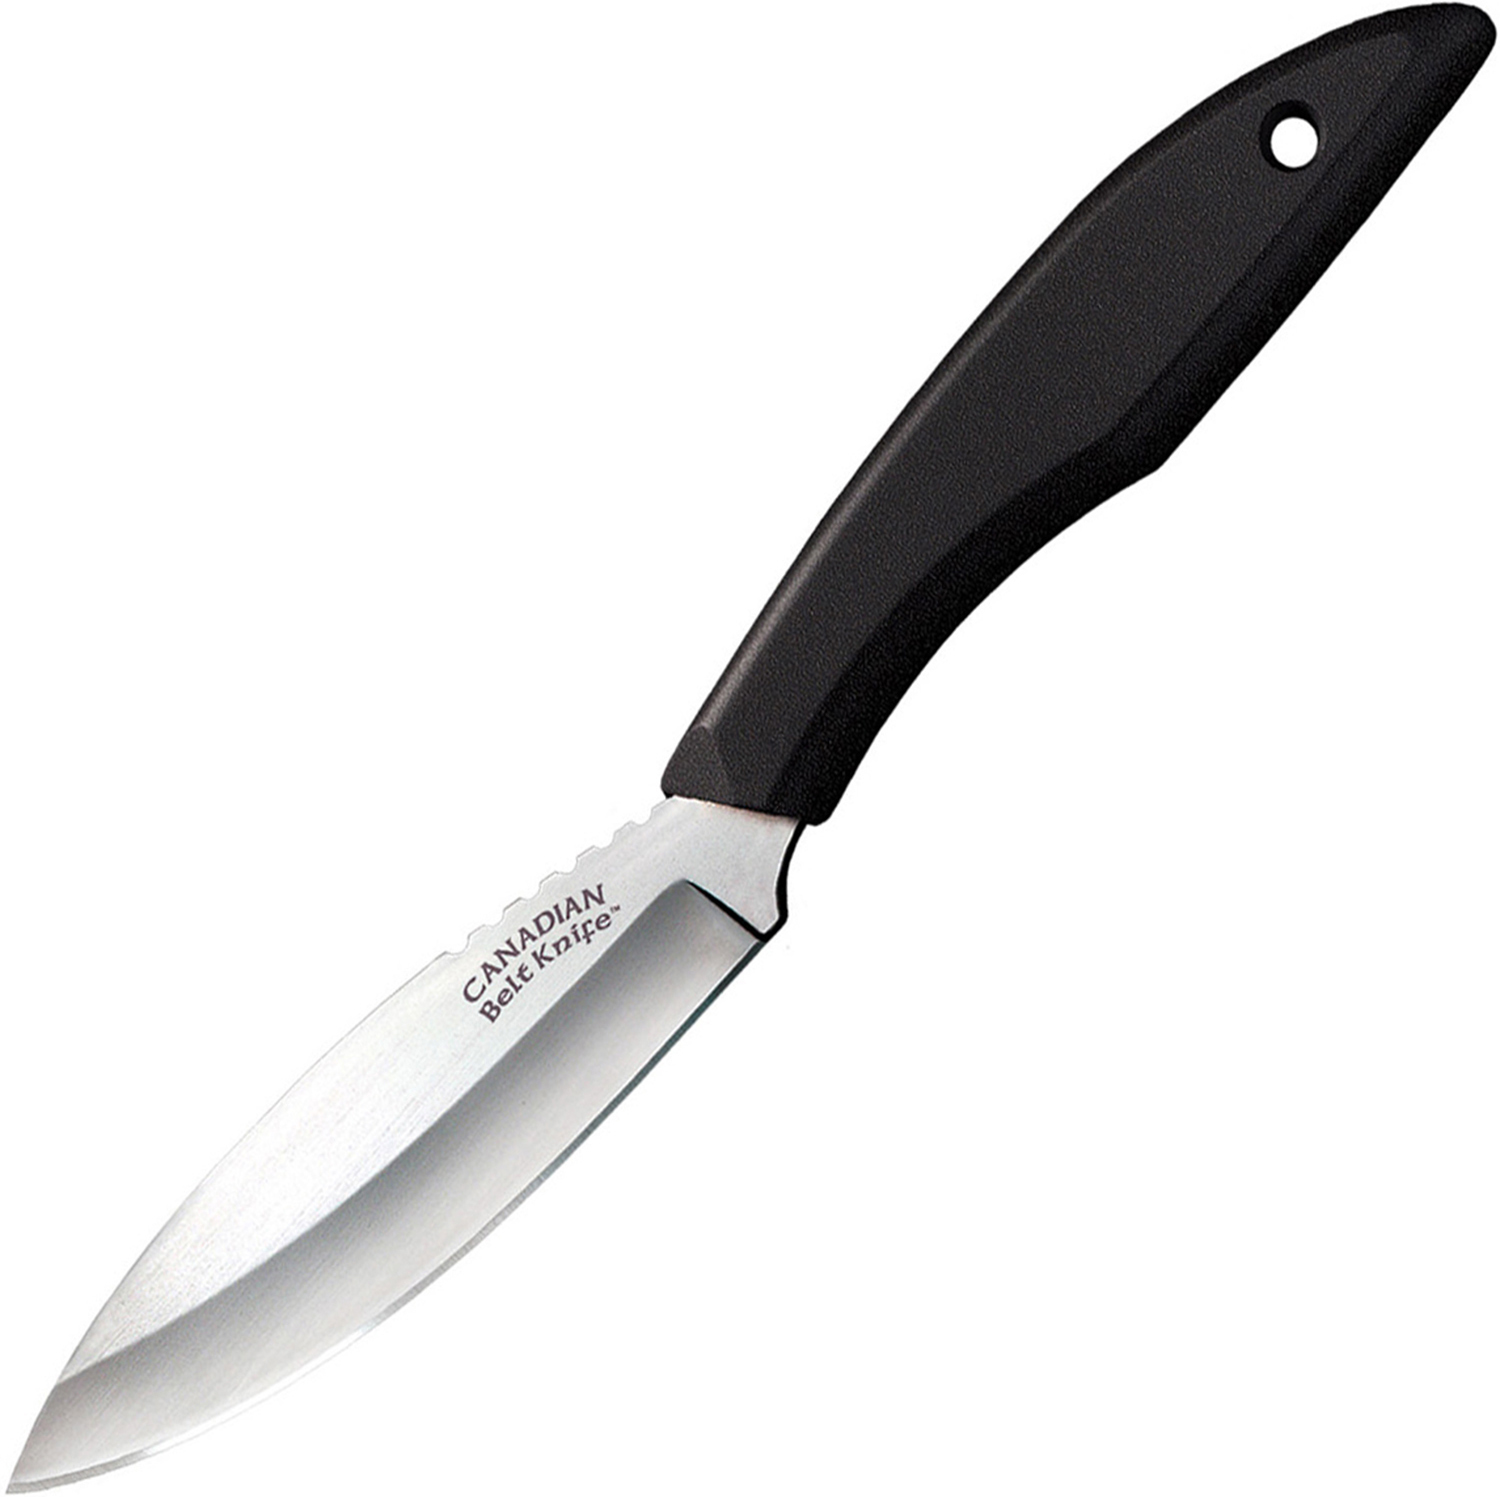 Нож с фиксированным клинком Cold Steel Canadian Belt, сталь 1.4116, рукоять пластик, black складной нож cold steel crawford model 1 сталь 1 4116